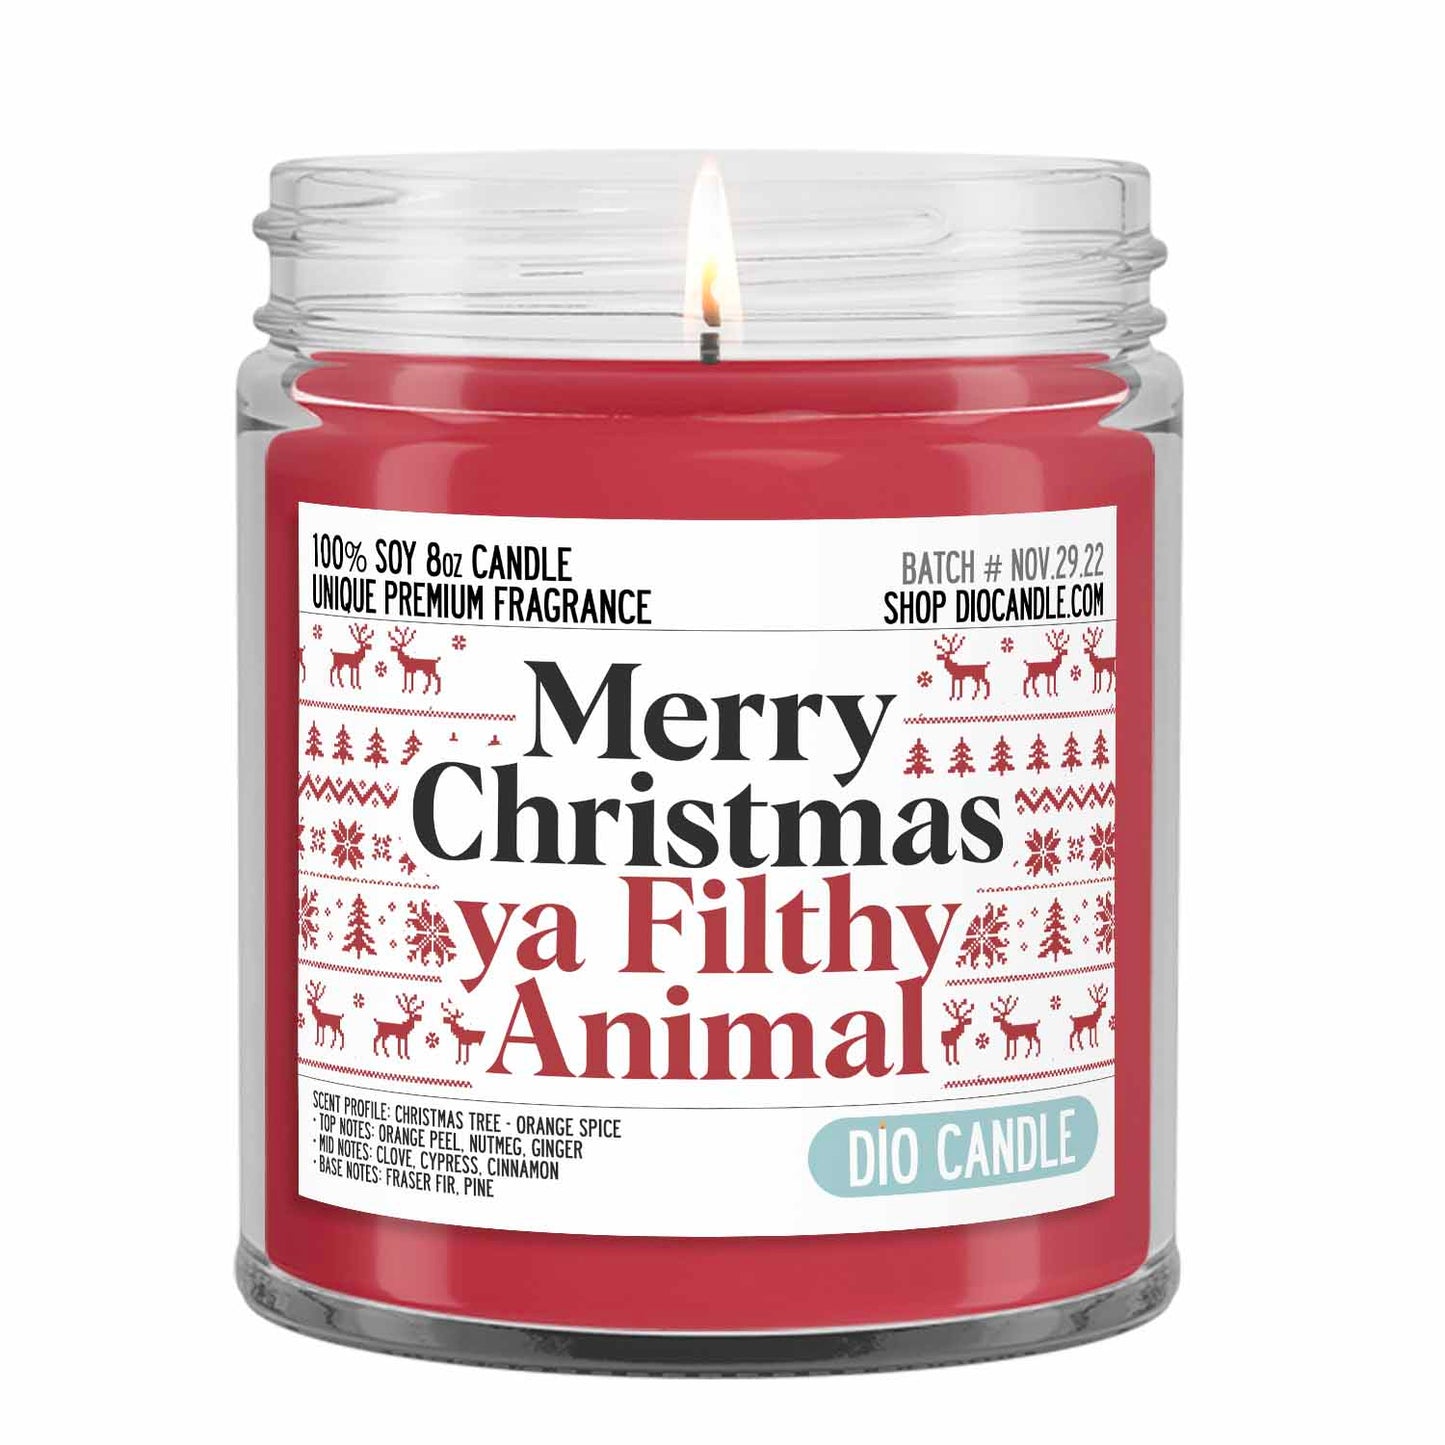 Merry Christmas Ya Filthy Animal Candle